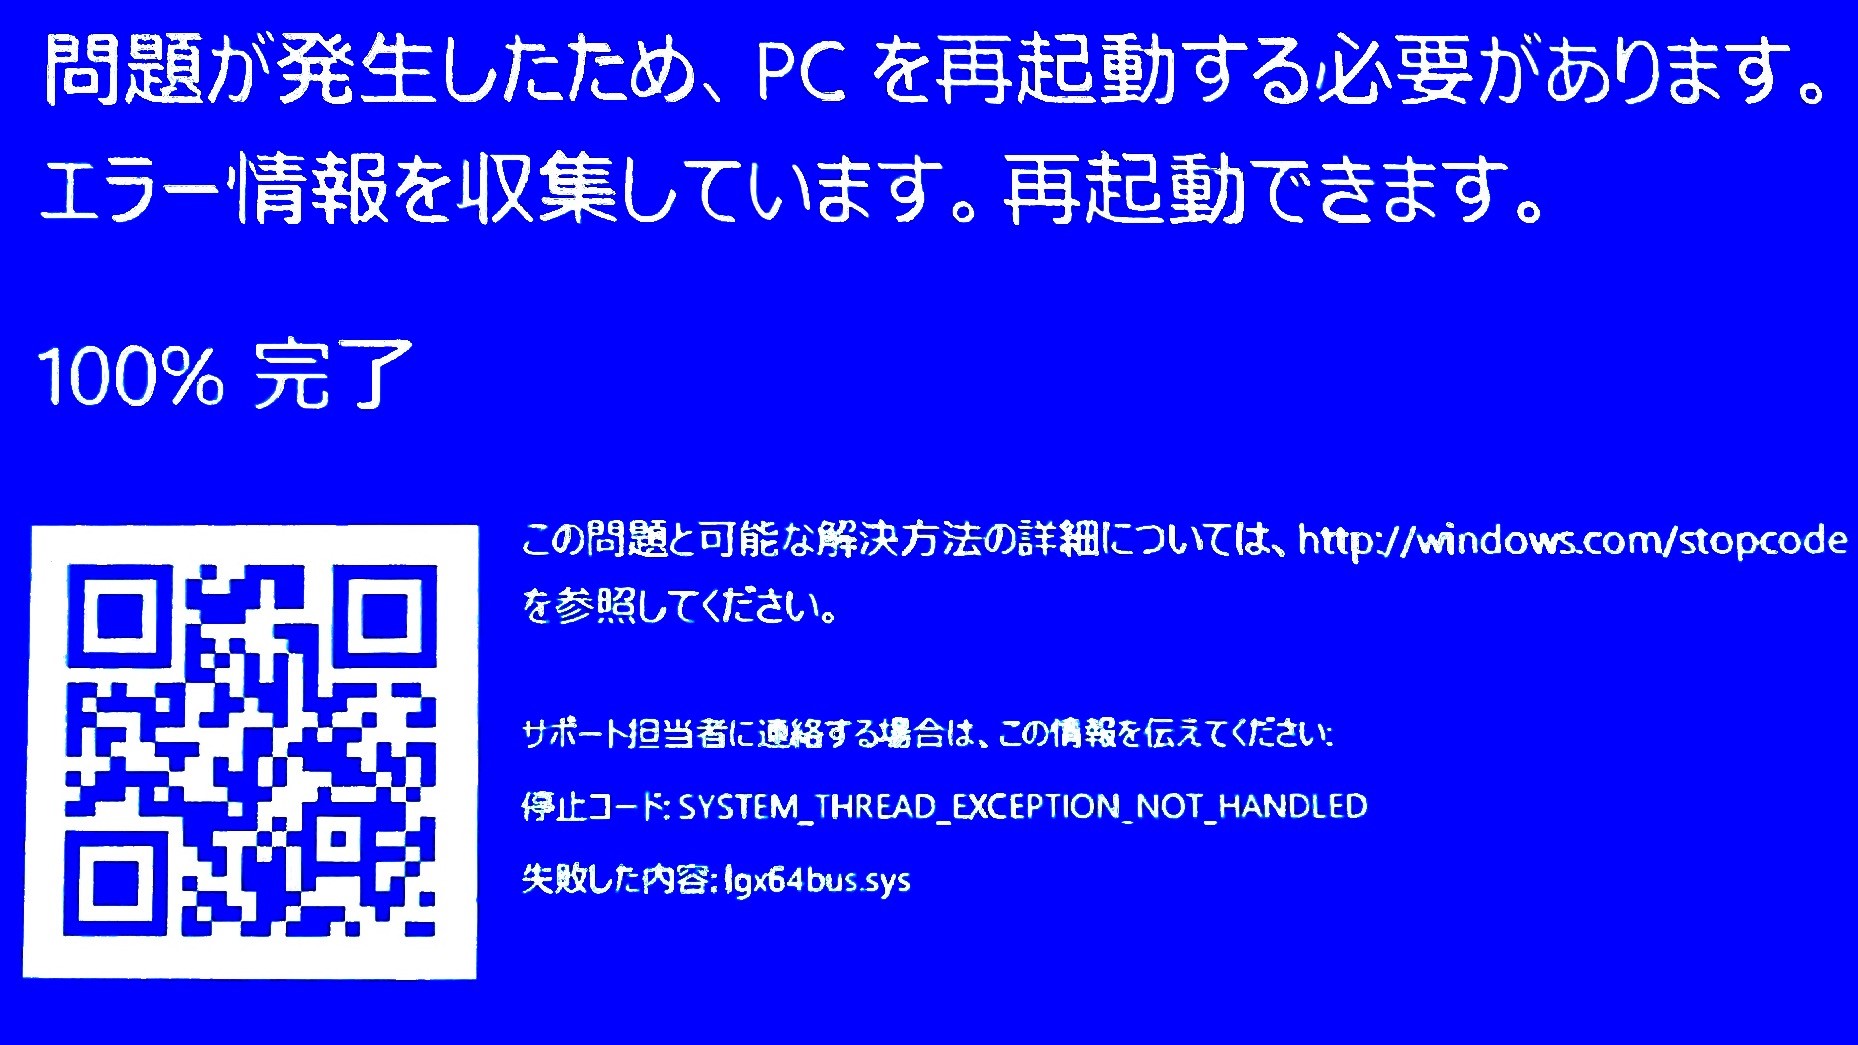 パソコンのメモリが壊れている Windowsの標準機能でチェックする方法 パソコン トラブル解決するなら Pc110 にお任せ 不具合の原因や自分でできる修理方法をご紹介